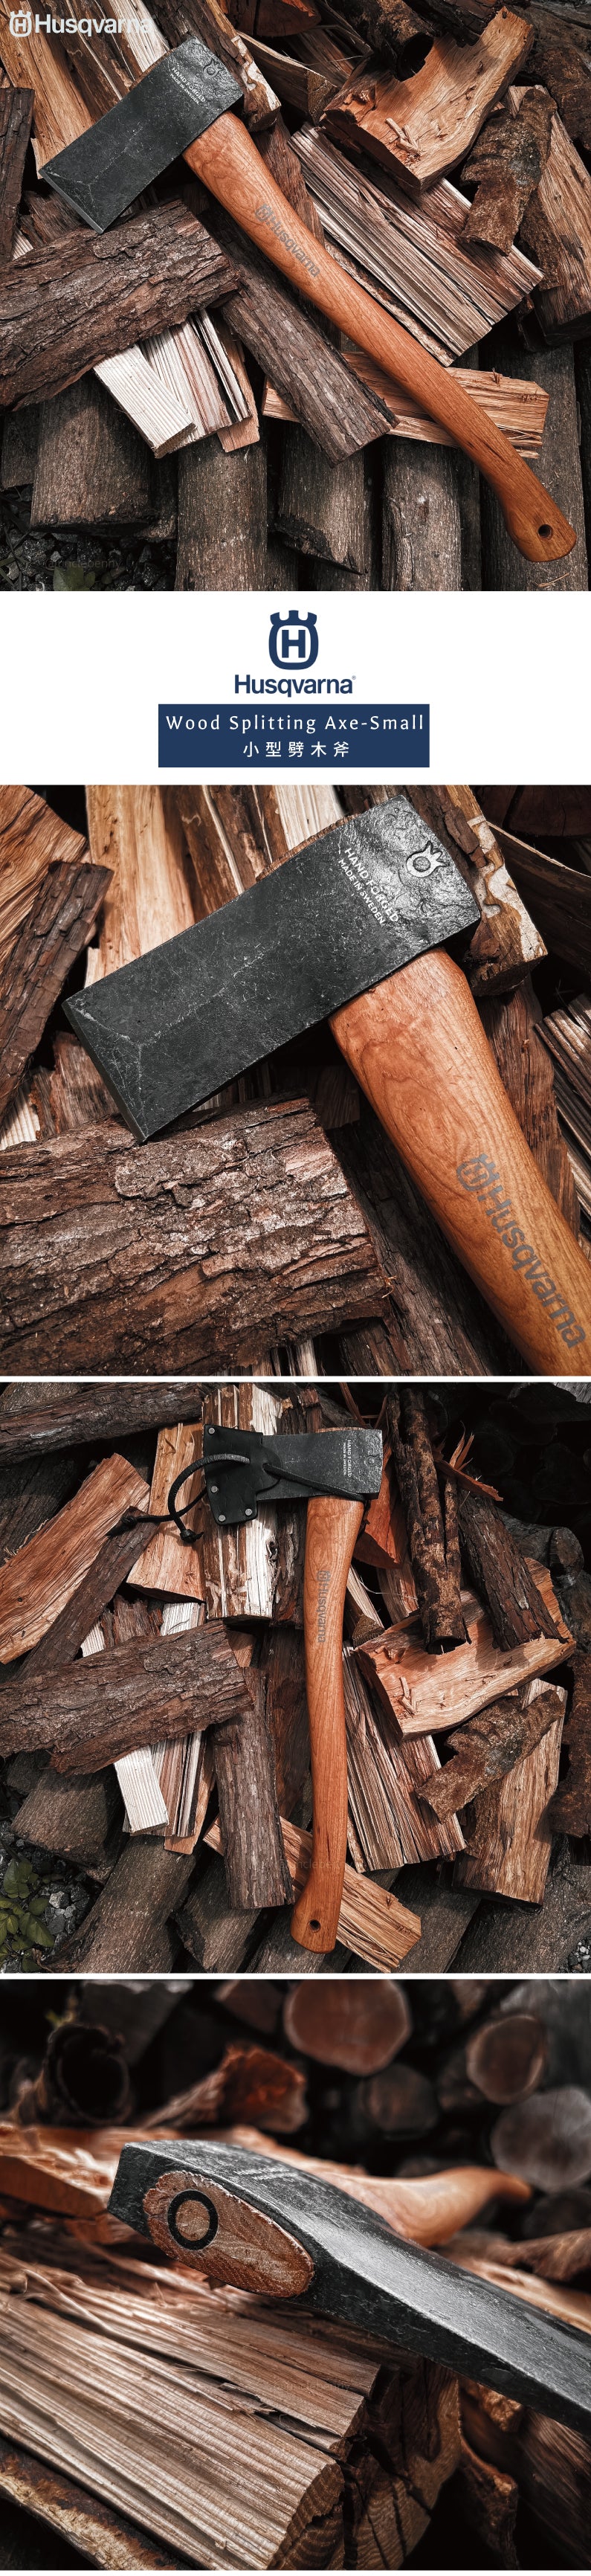 瑞典Husqvarna •  手工鍛造Wood Splitting Axe-Small 劈木斧